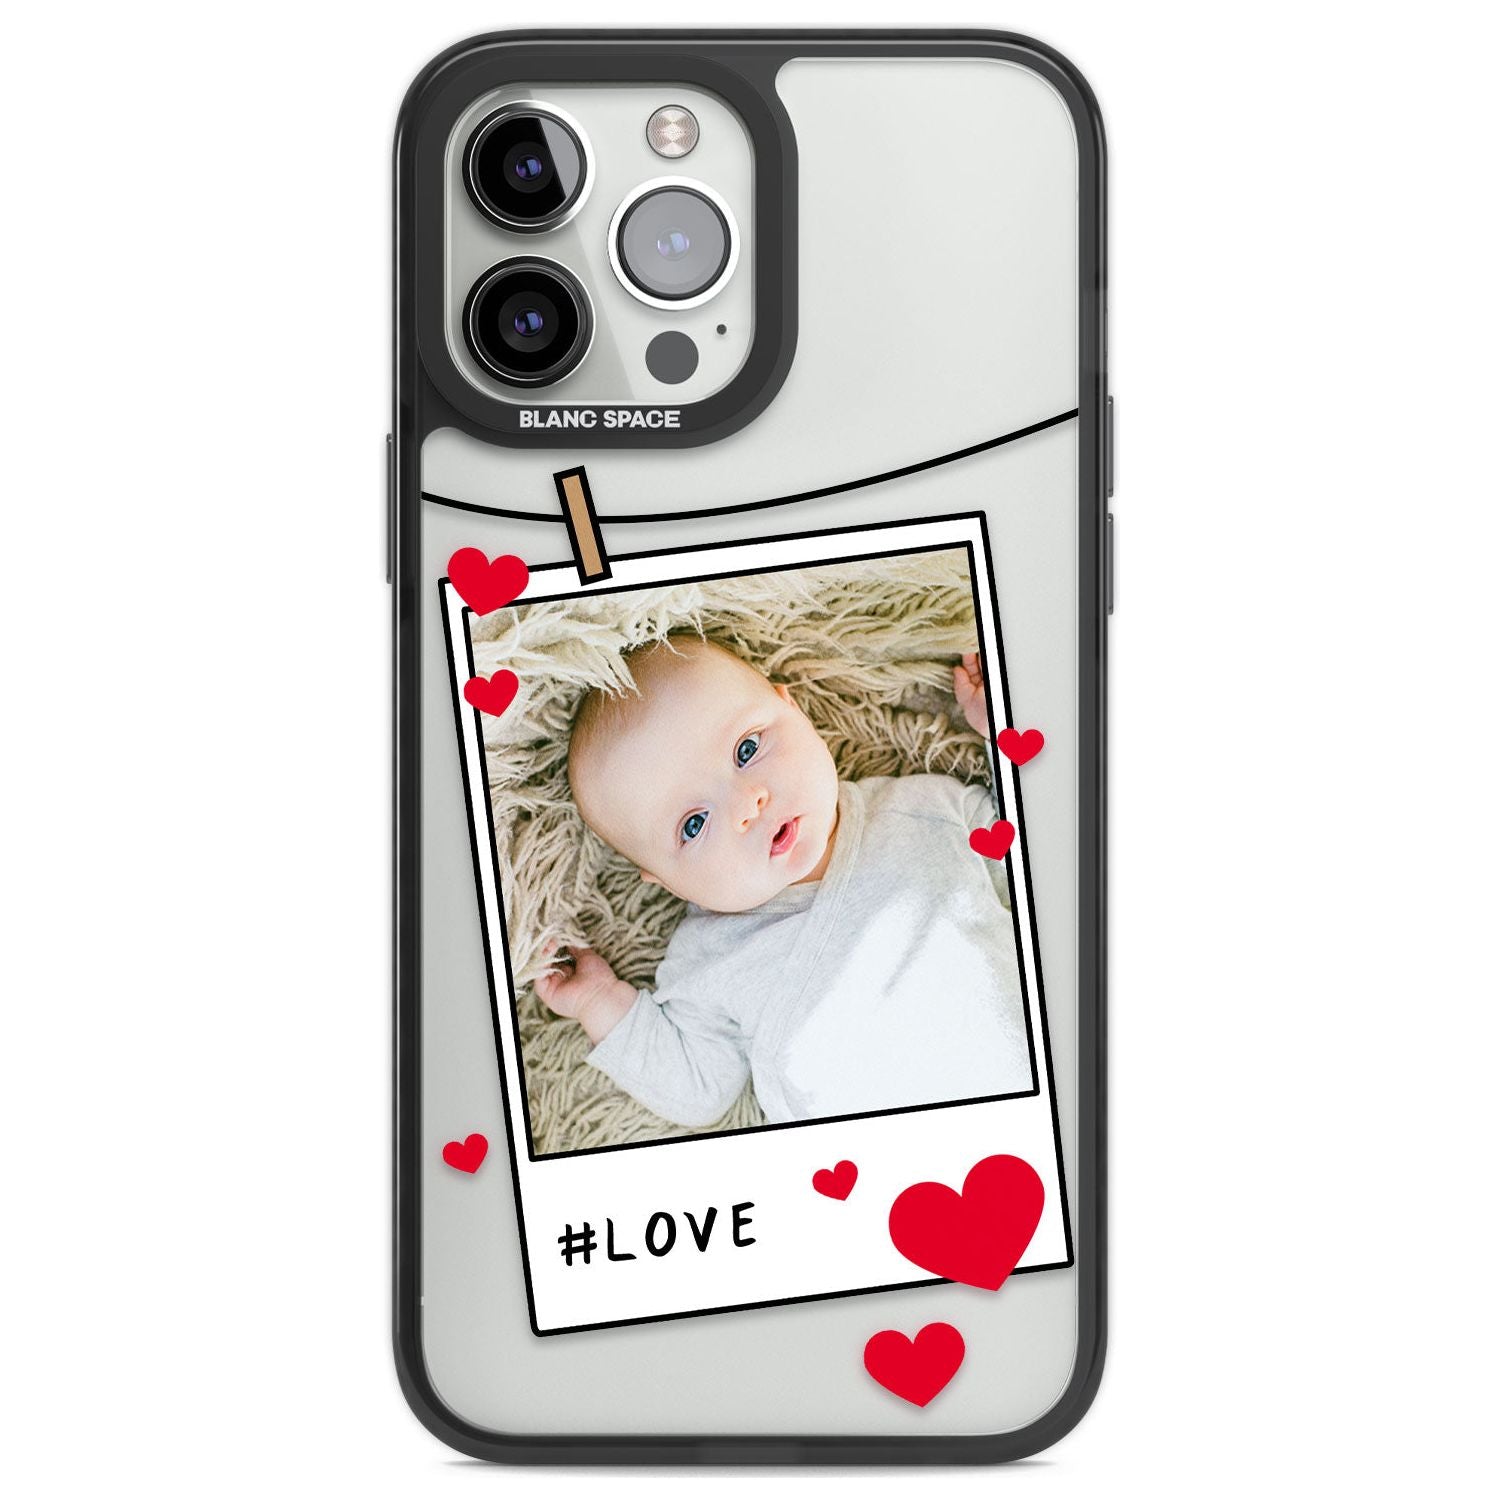 Personalised Love Instant Film Photo Custom Phone Case iPhone 13 Pro Max / Black Impact Case,iPhone 14 Pro Max / Black Impact Case Blanc Space